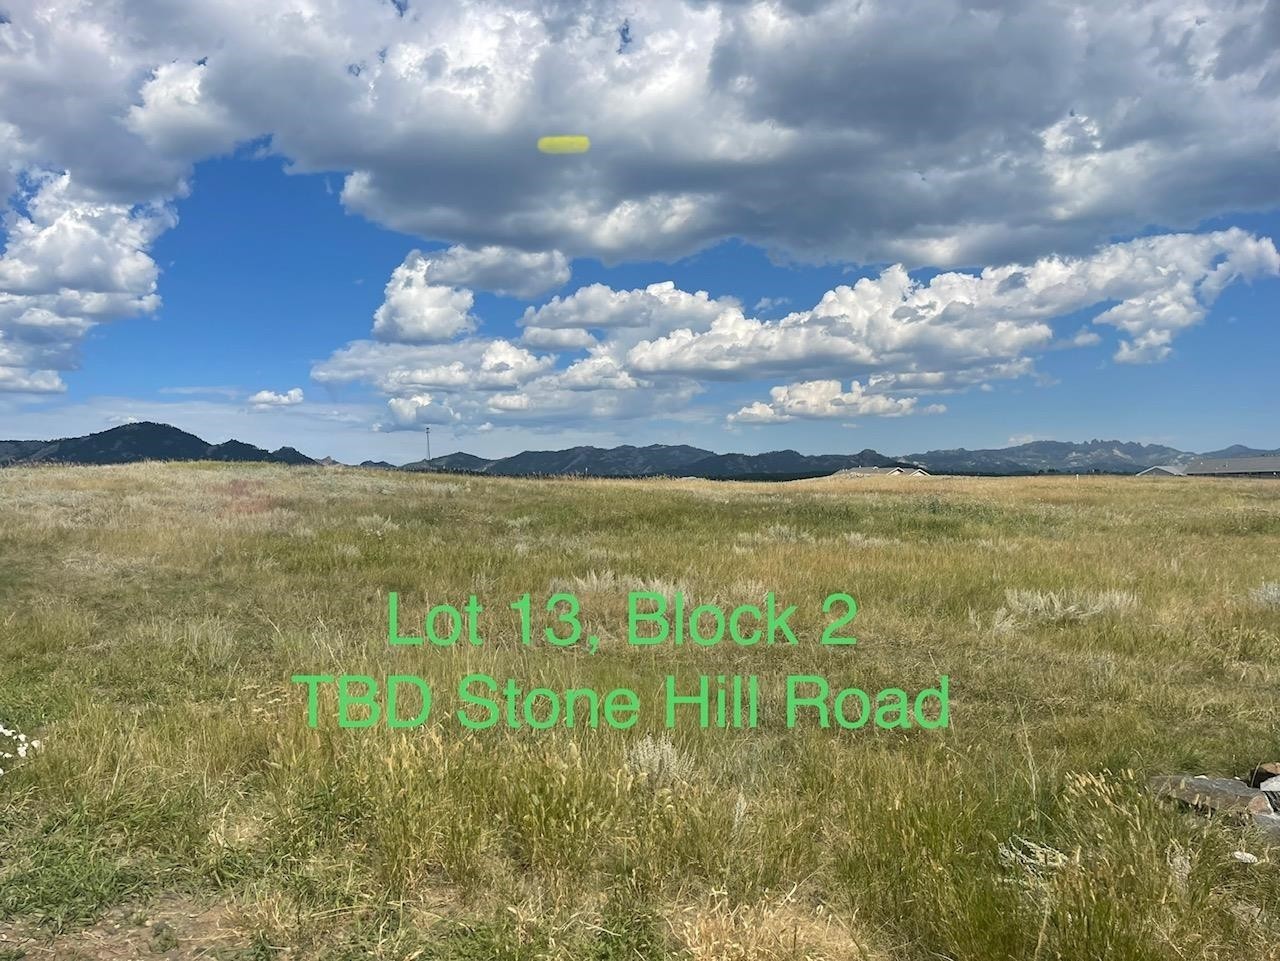 1. Lot 13, Block 1 Stone Hill